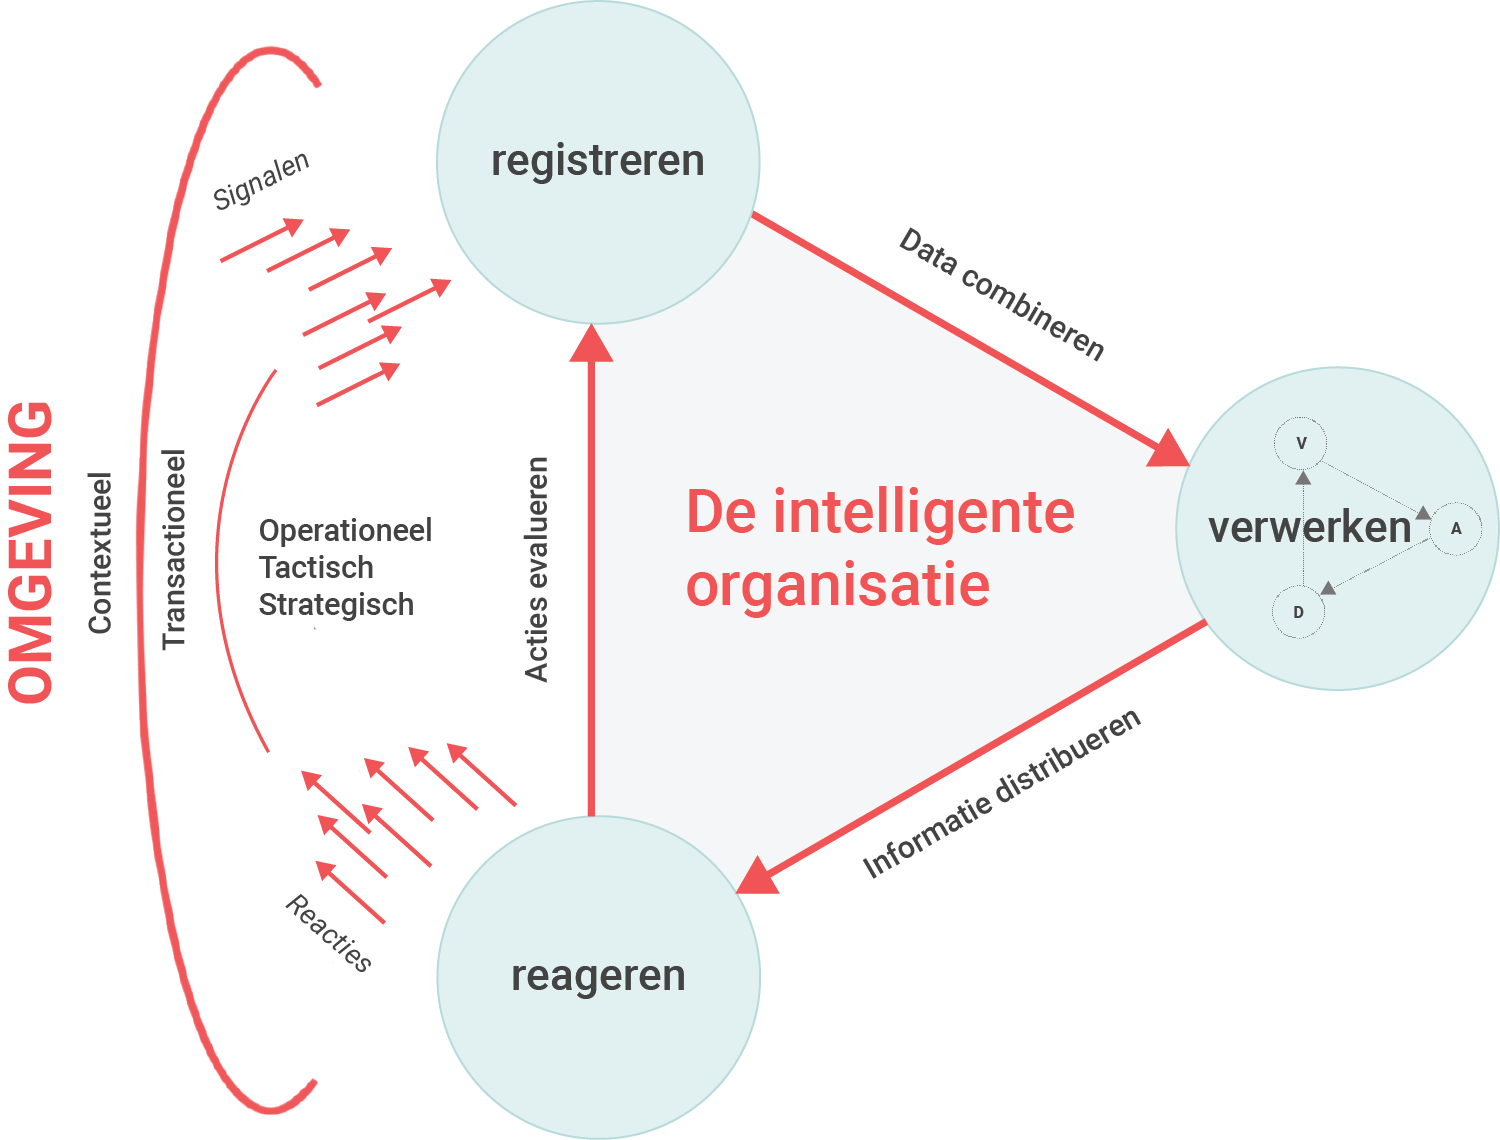 De intelligente organisatie kent drie processen: registreren, verwerken en reageren